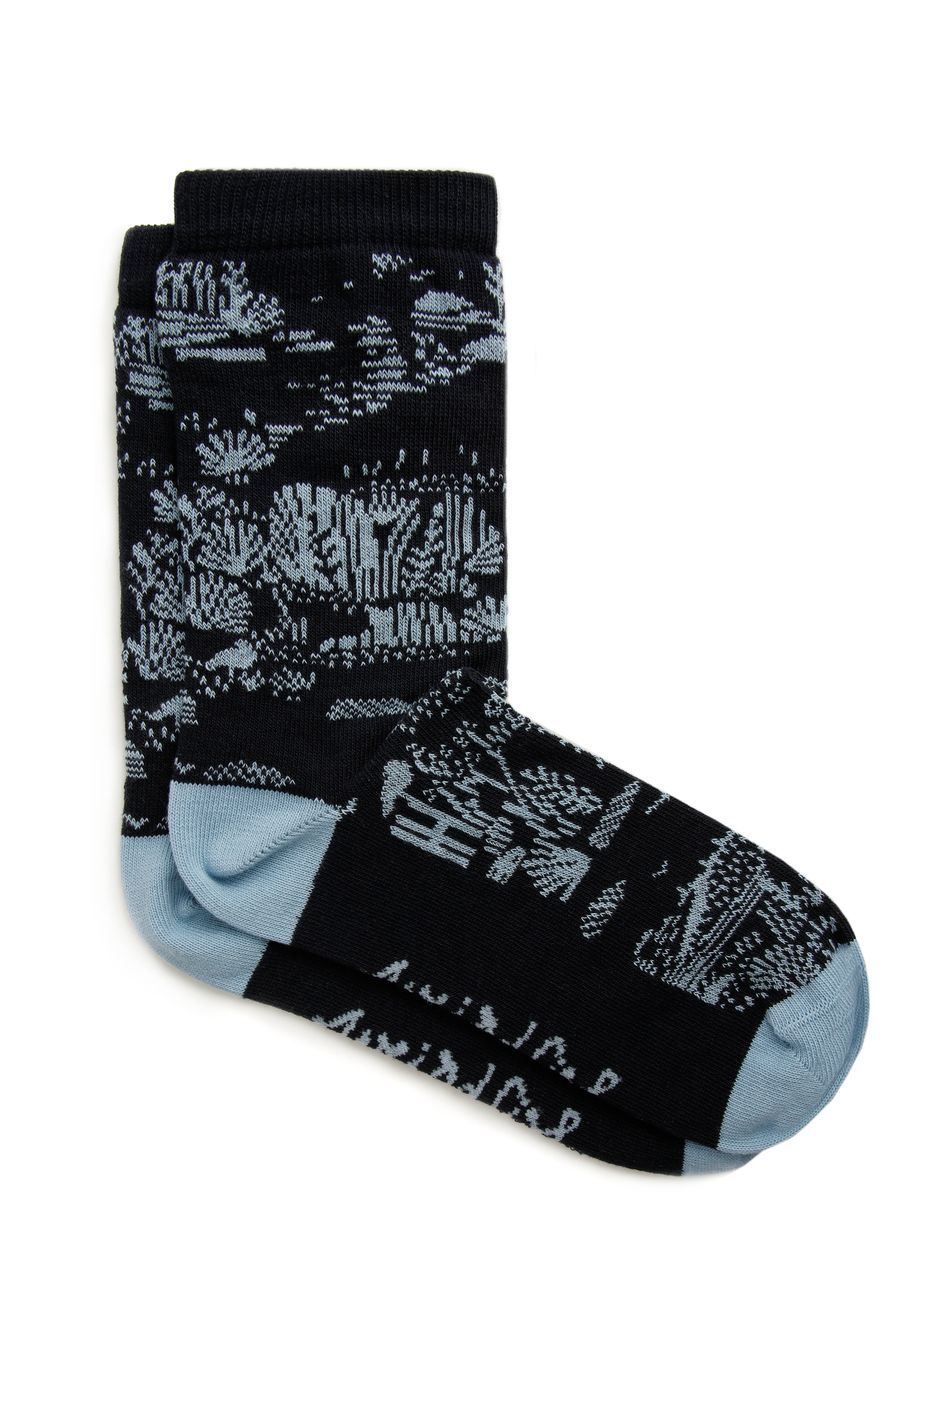 Ives Patterned Jacquard Socks Midnight